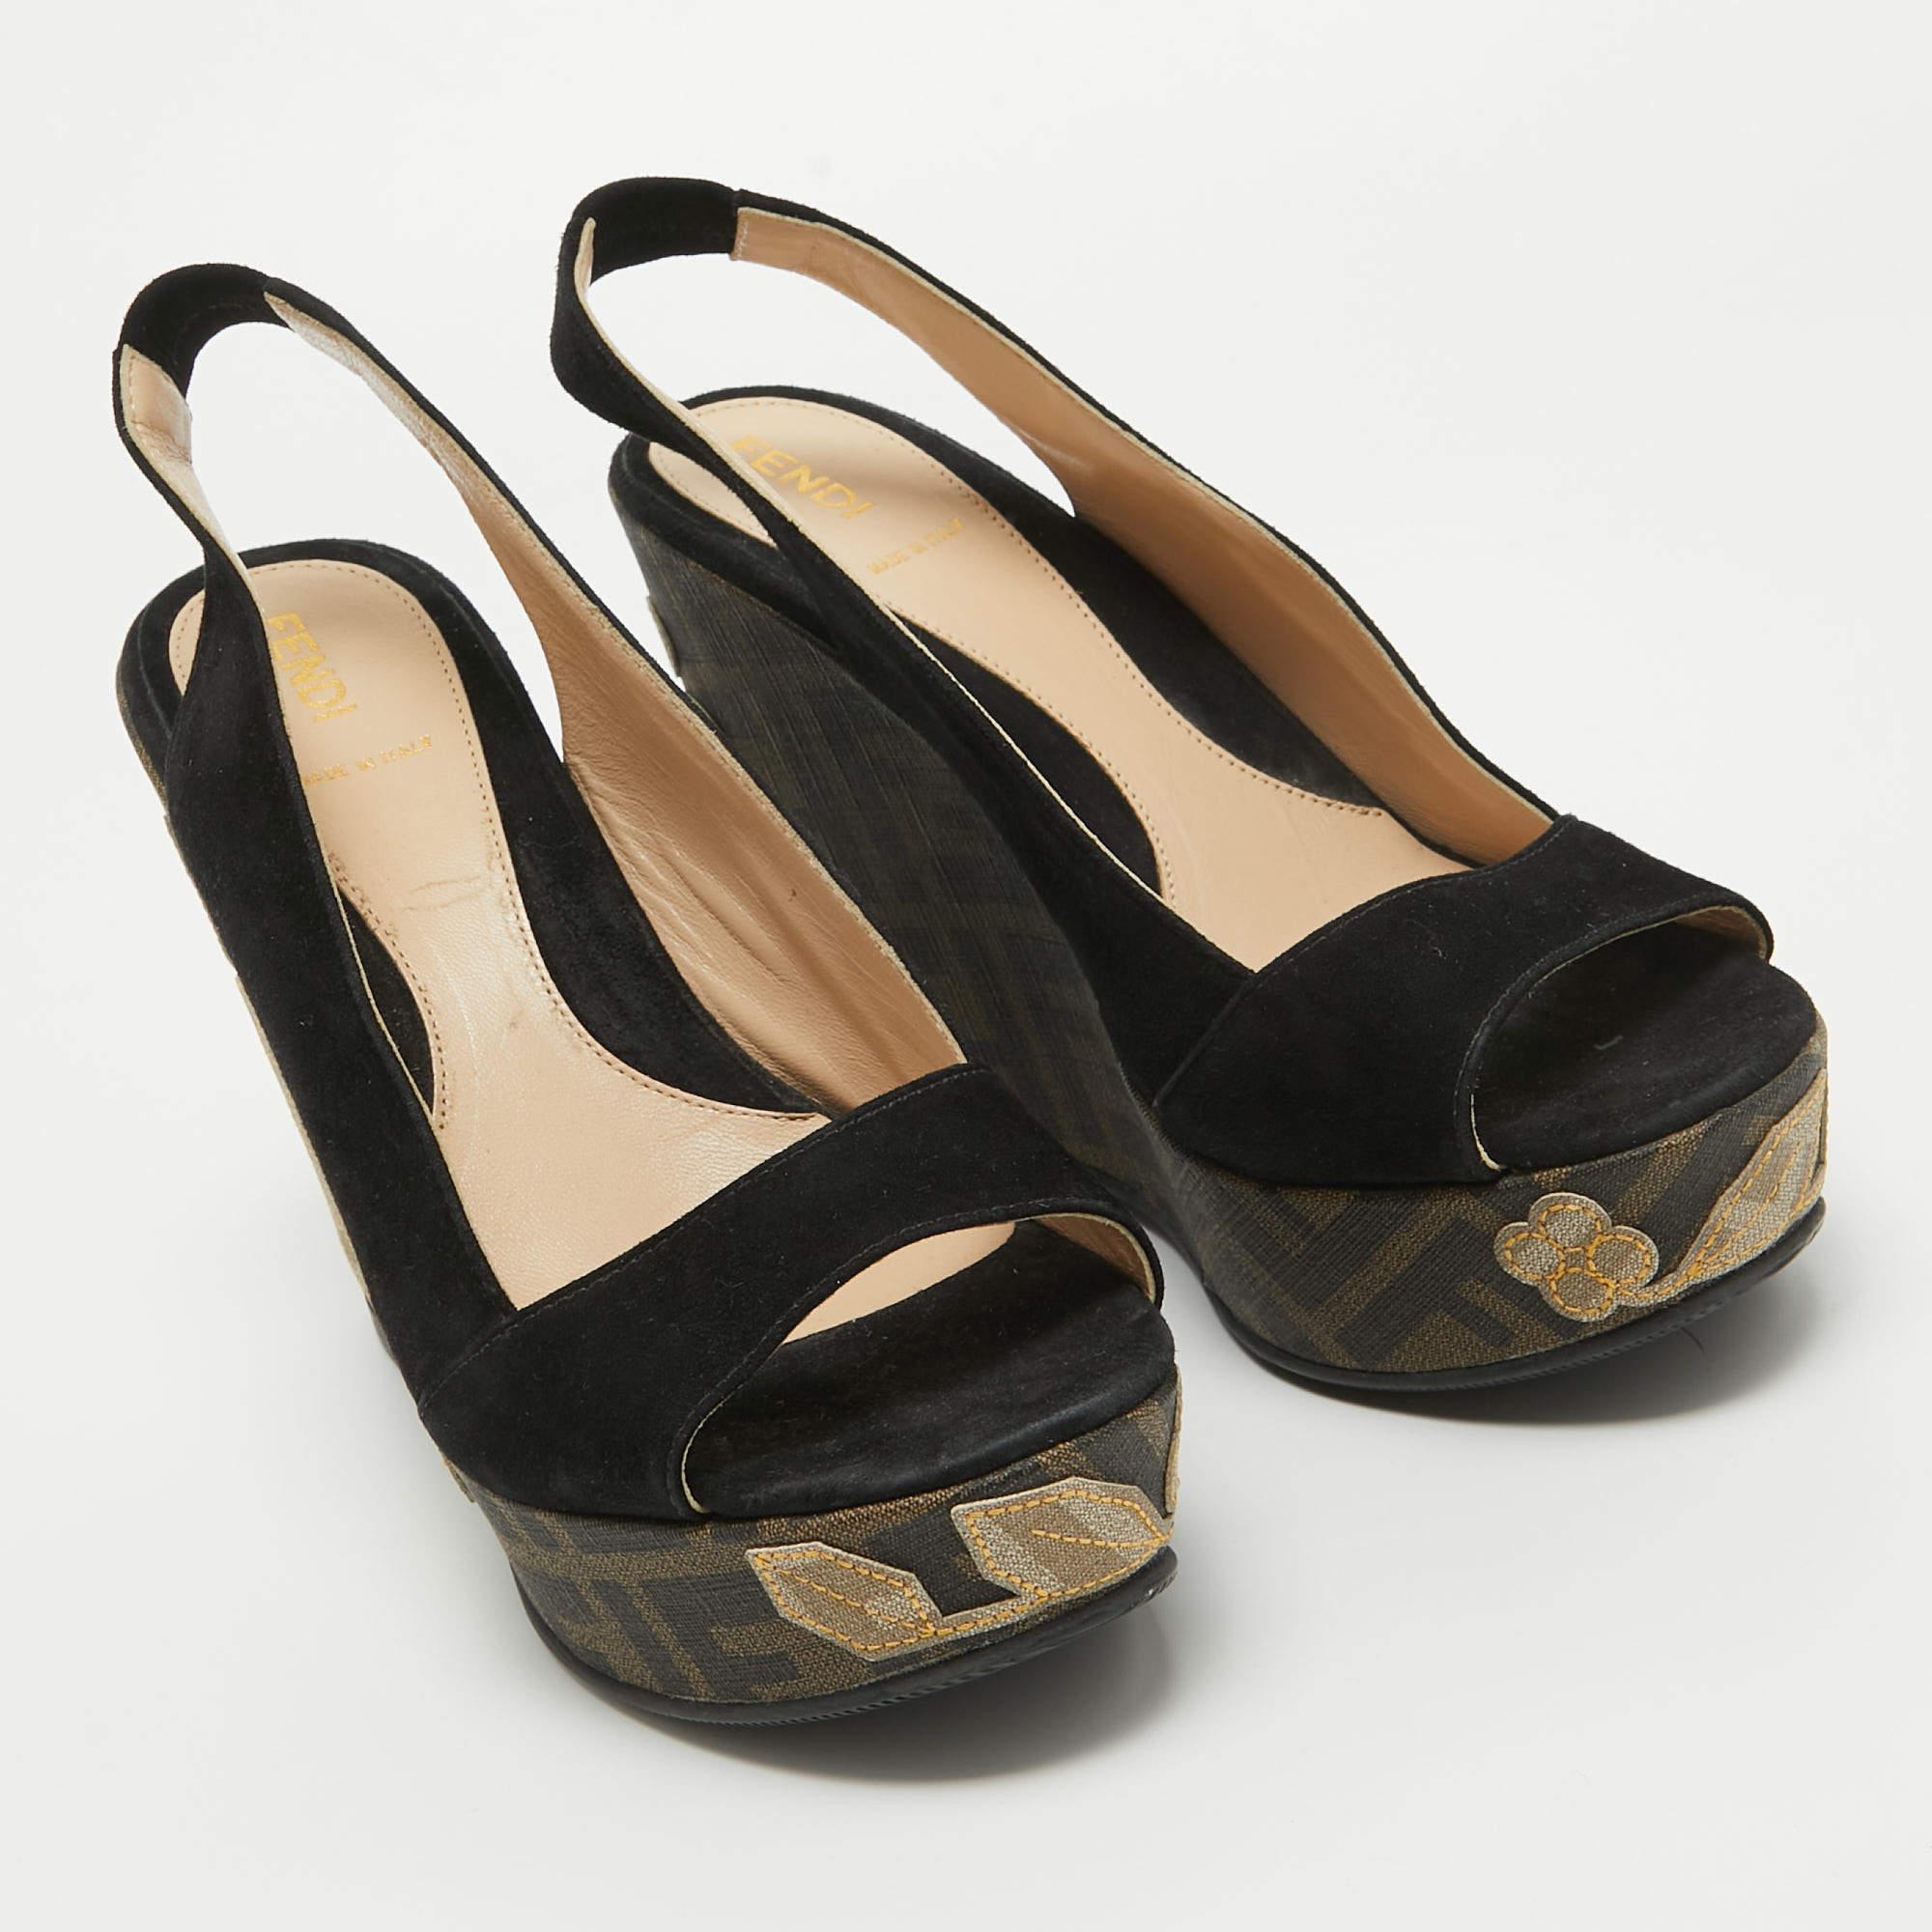 Fendi Black Suede Zucca Appliqued Wedge Platform Slingback Sandals Size 38.5 2